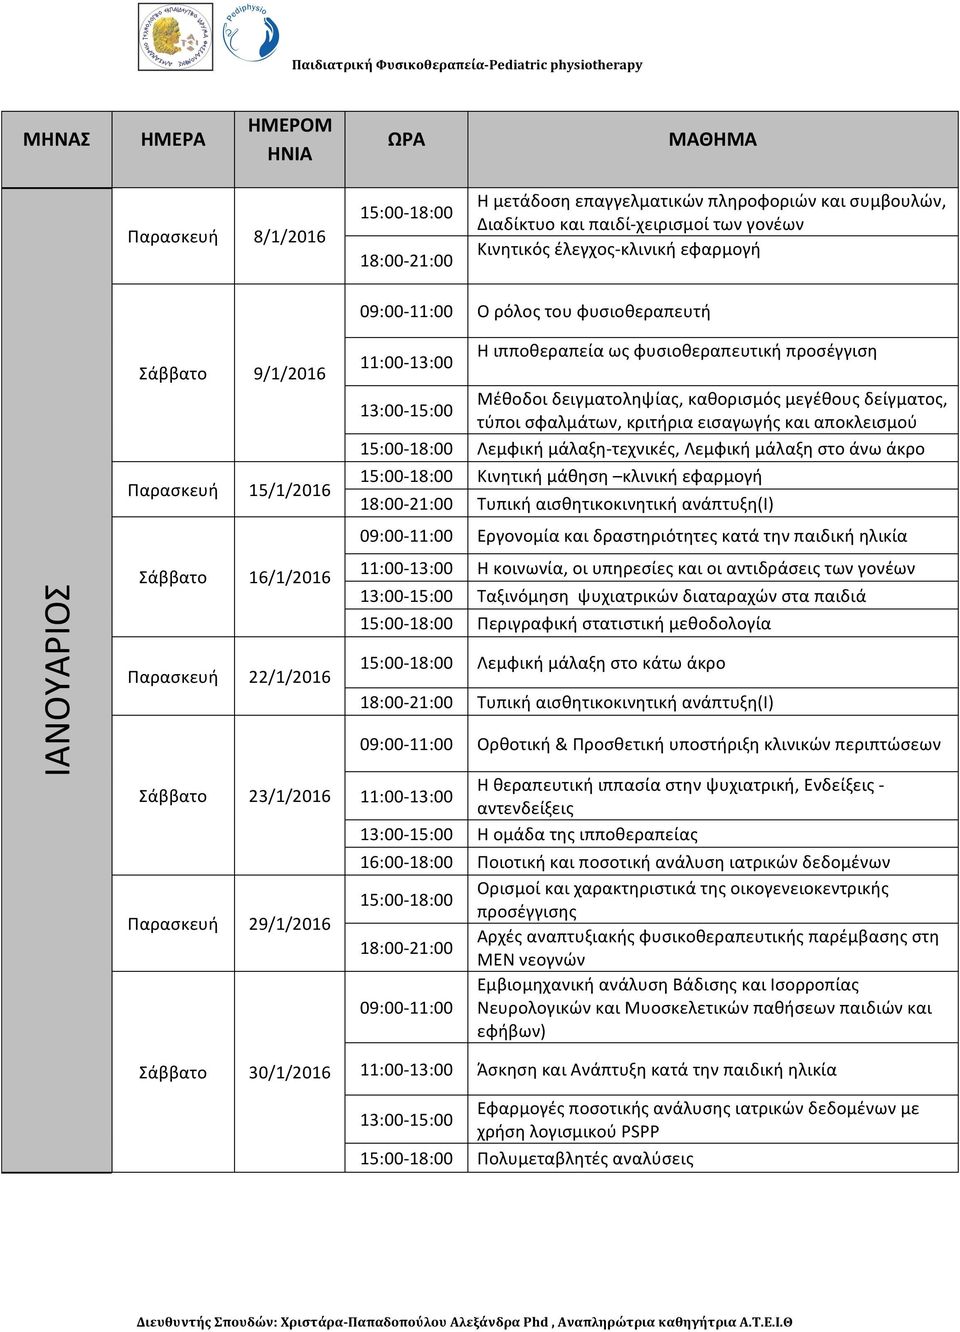 δείγματος, τύποι σφαλμάτων, κριτήρια εισαγωγής και αποκλεισμού Λεμφική μάλαξη-τεχνικές, Λεμφική μάλαξη στο άνω άκρο Κινητική μάθηση κλινική εφαρμογή Τυπική αισθητικοκινητική ανάπτυξη(i) Εργονομία και